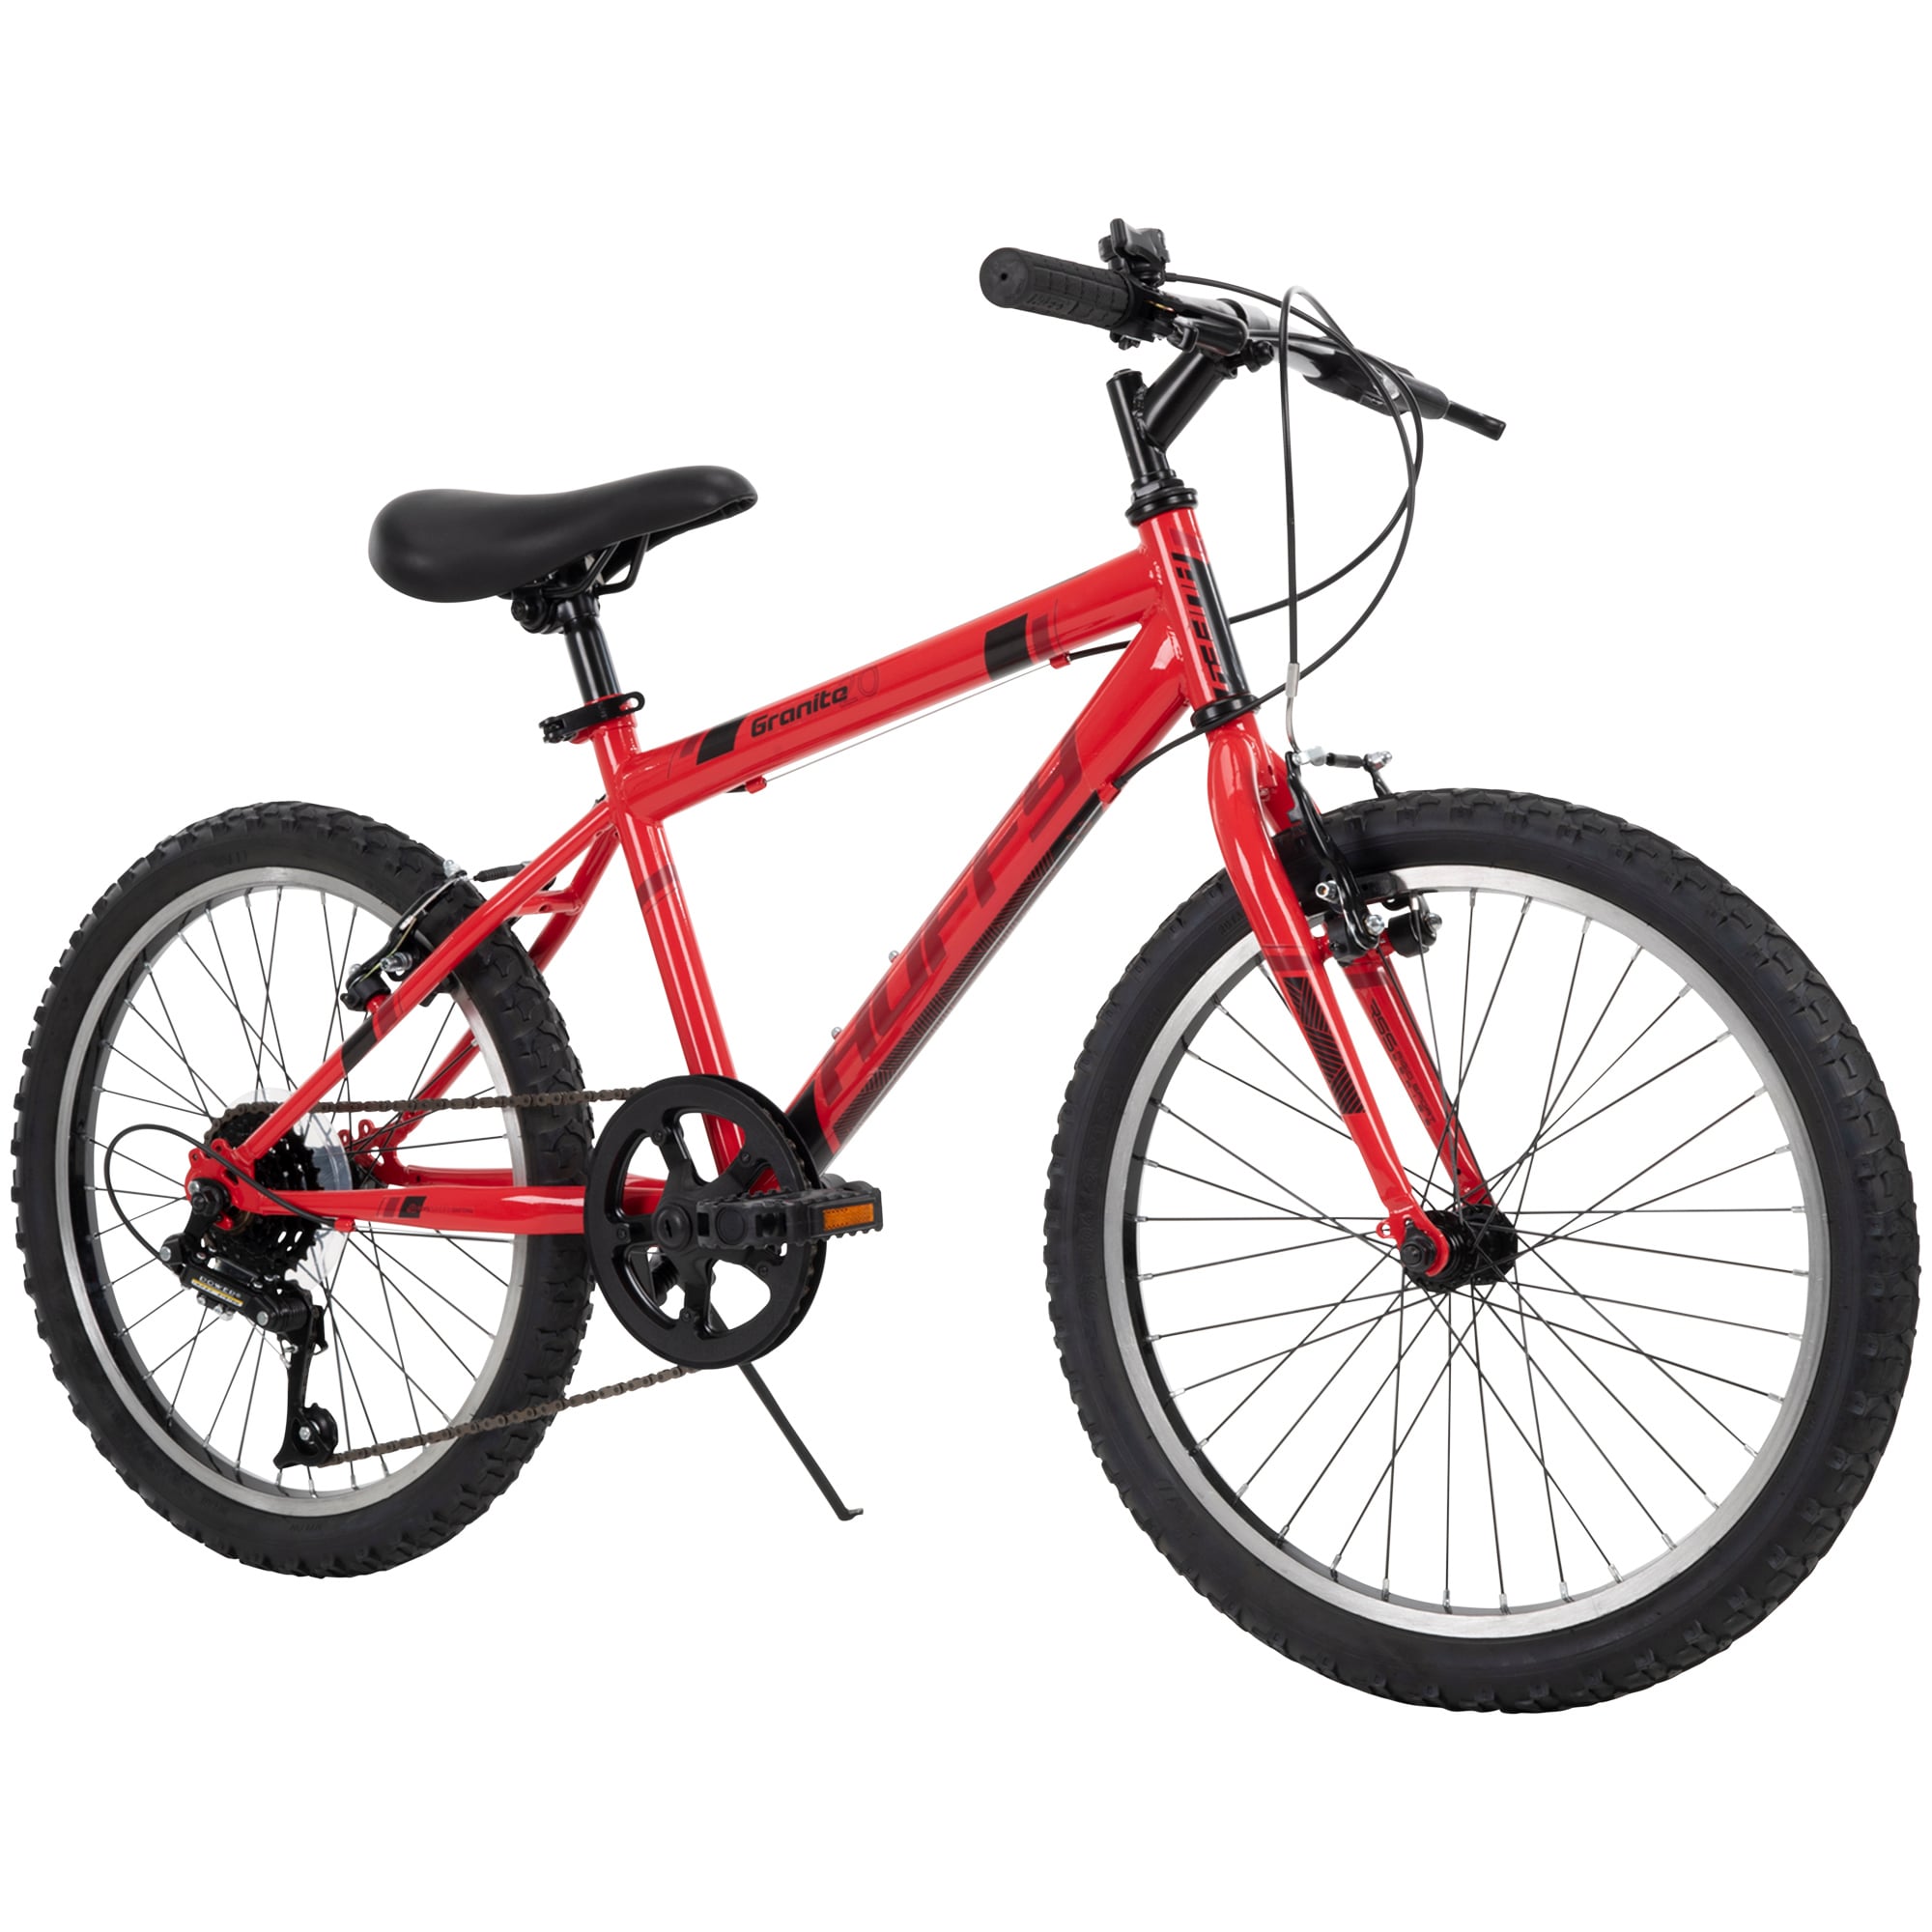 Huffy 20-in Boy's Bike - Medium Size - Durable Steel Frame - Rigid ...